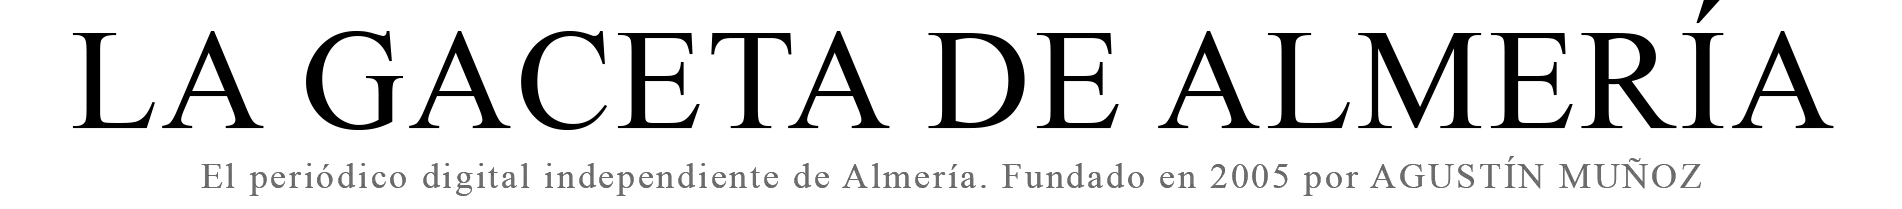 La Gaceta de Almeria (El periódico digital independiente)